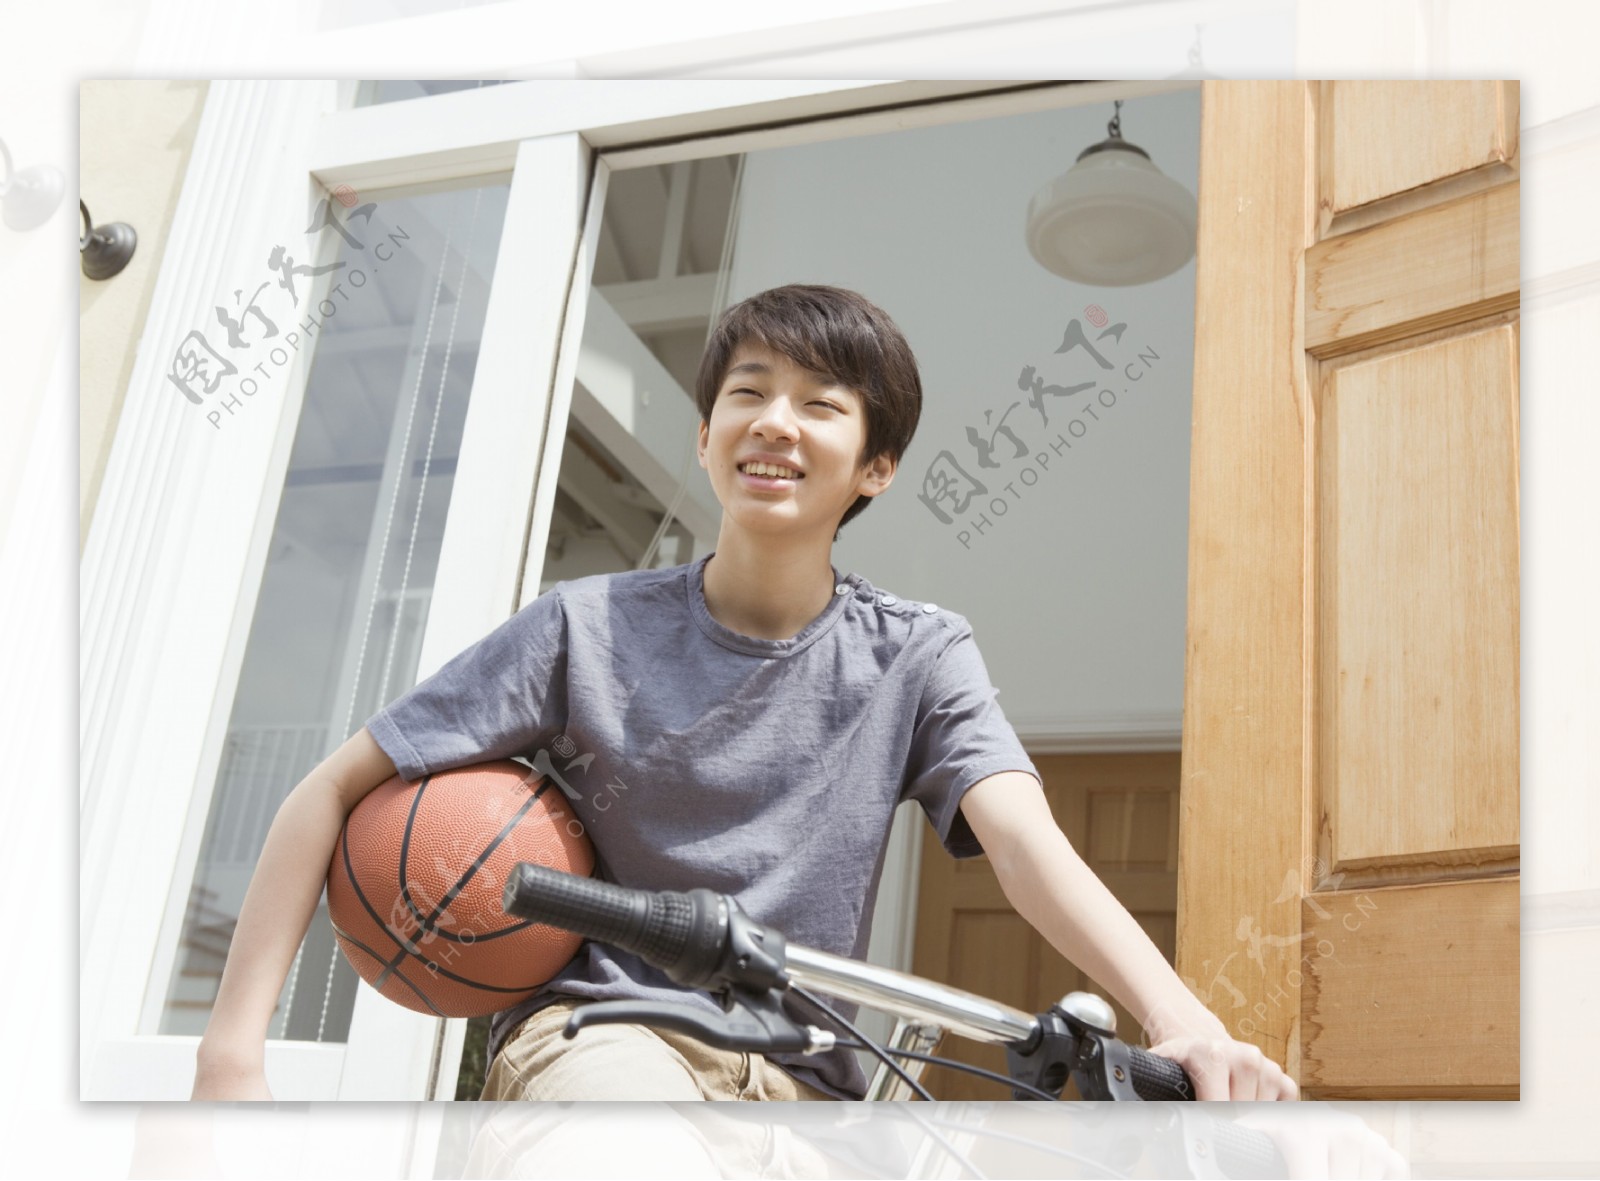 骑自行车的少年篮球少年图片